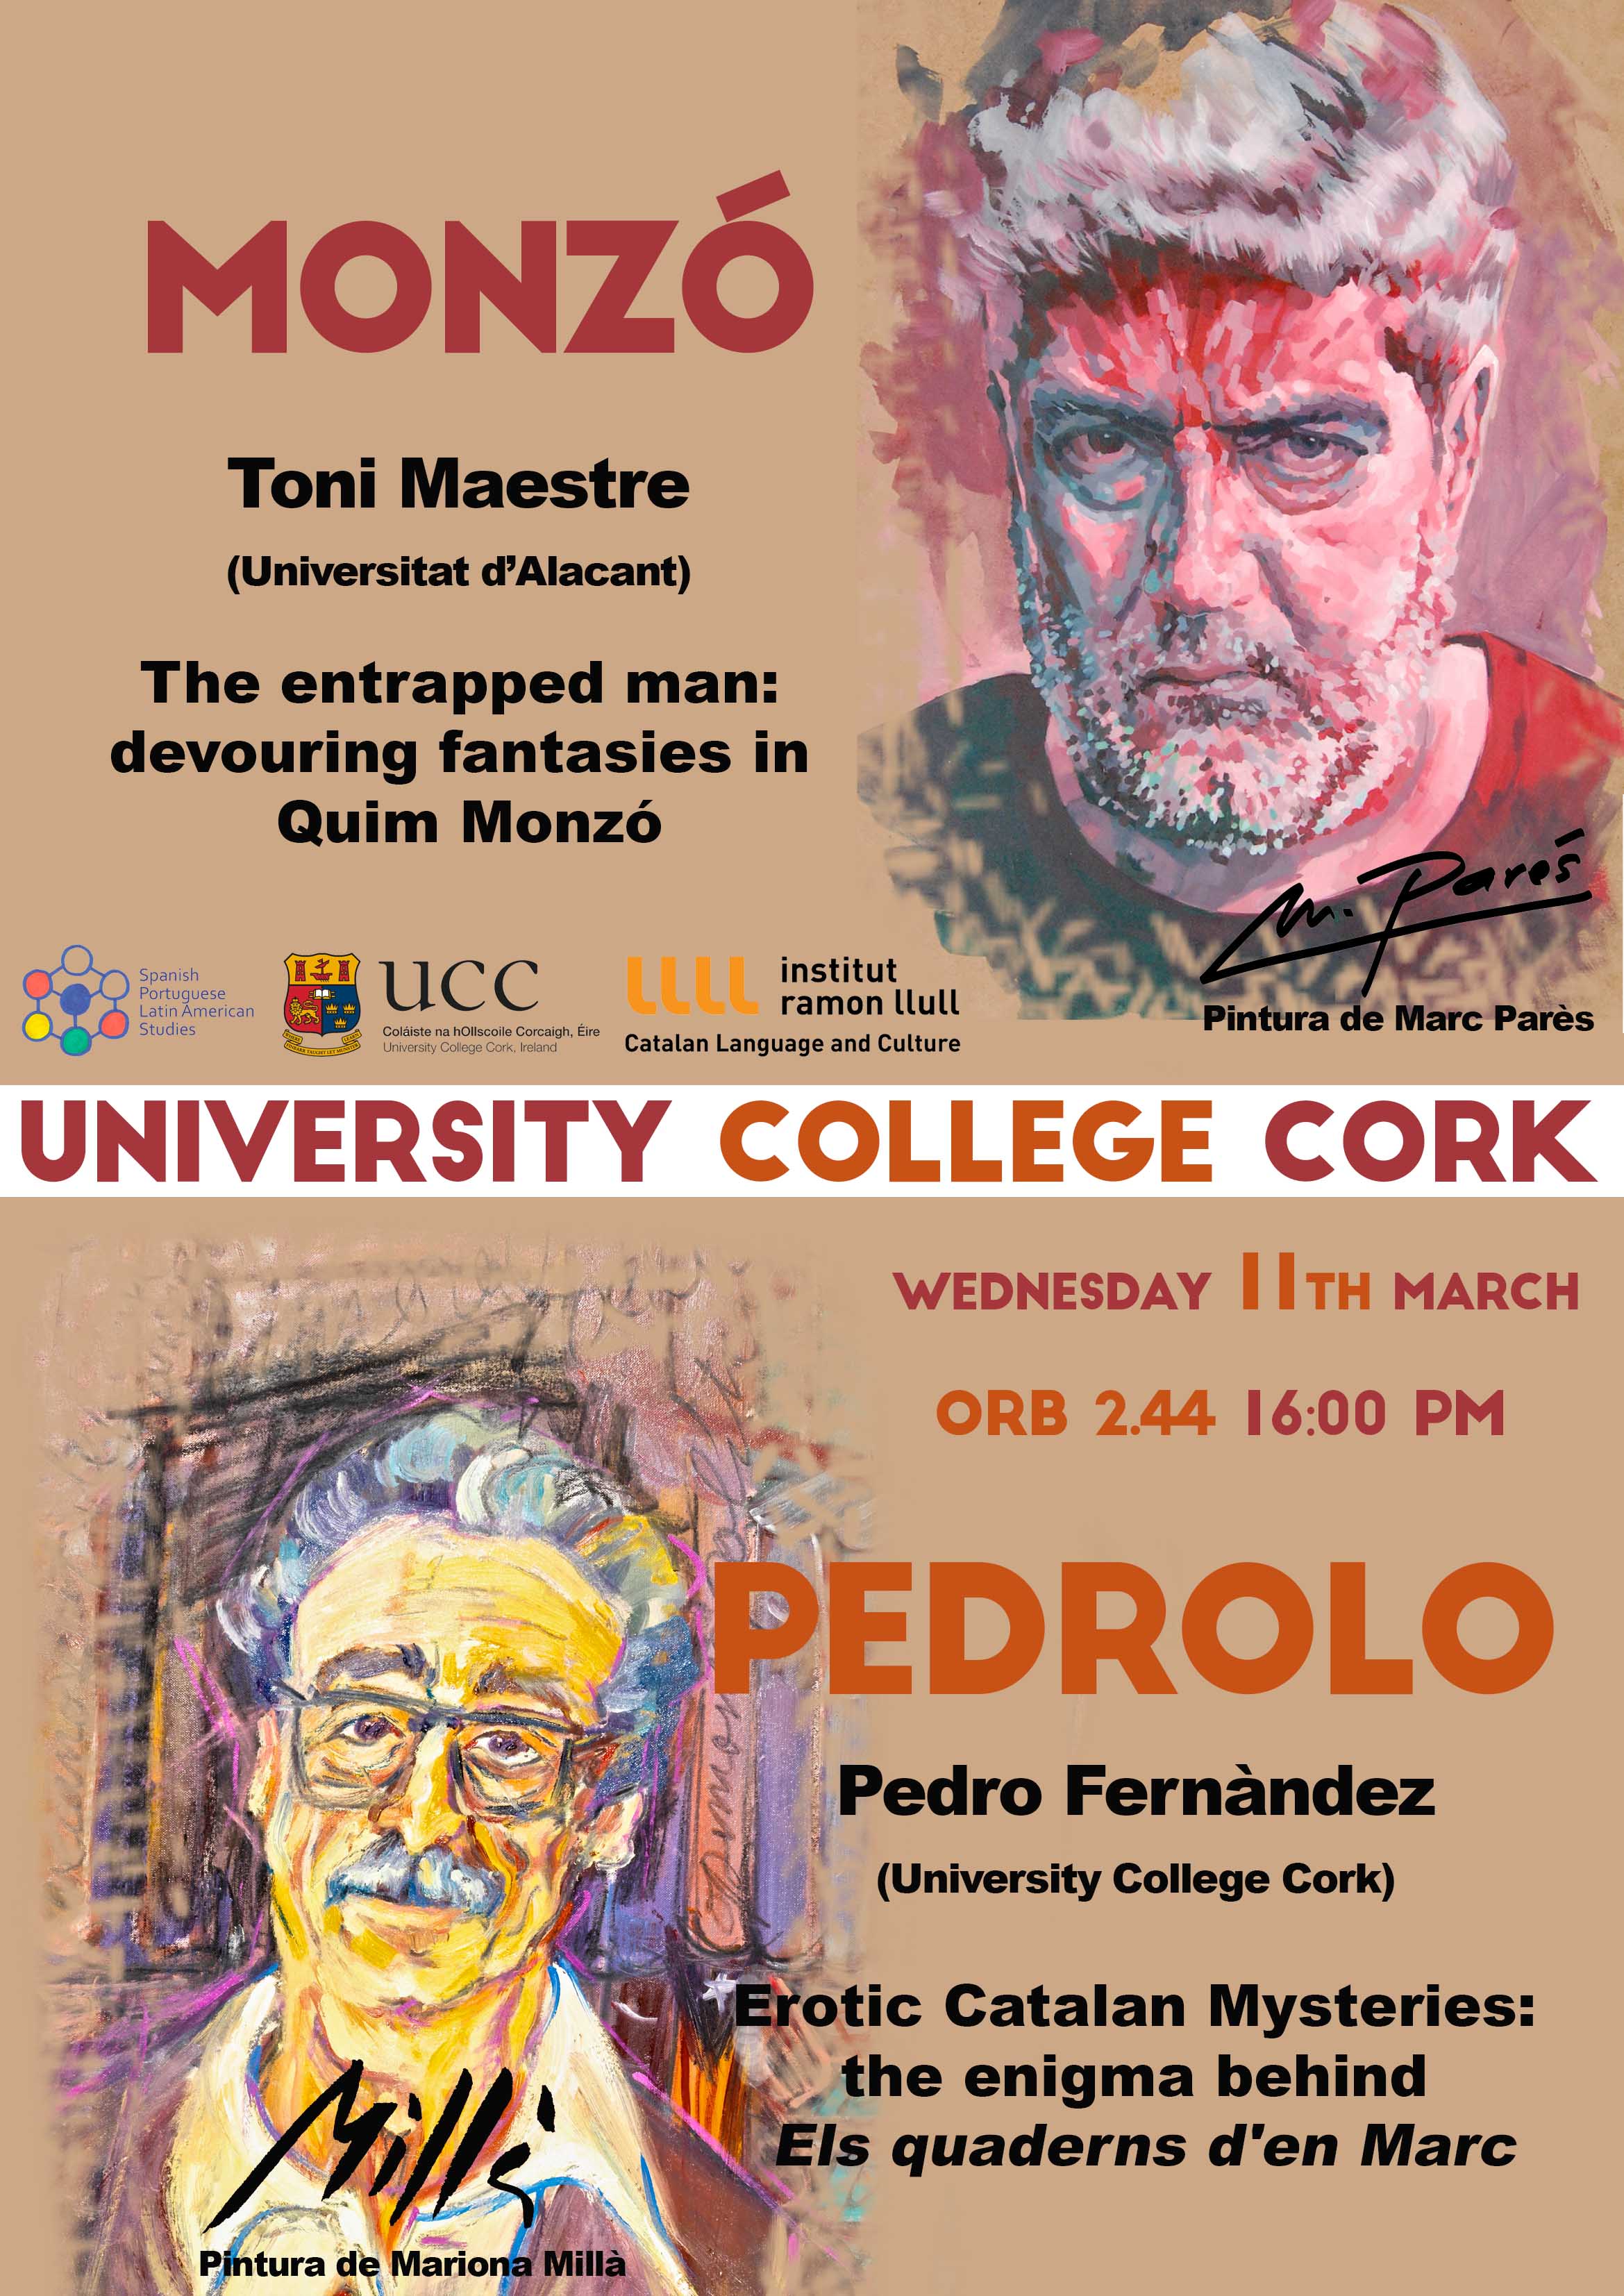 Quim Monzó & Manuel de Pedrolo: Double Catalan Research Seminar